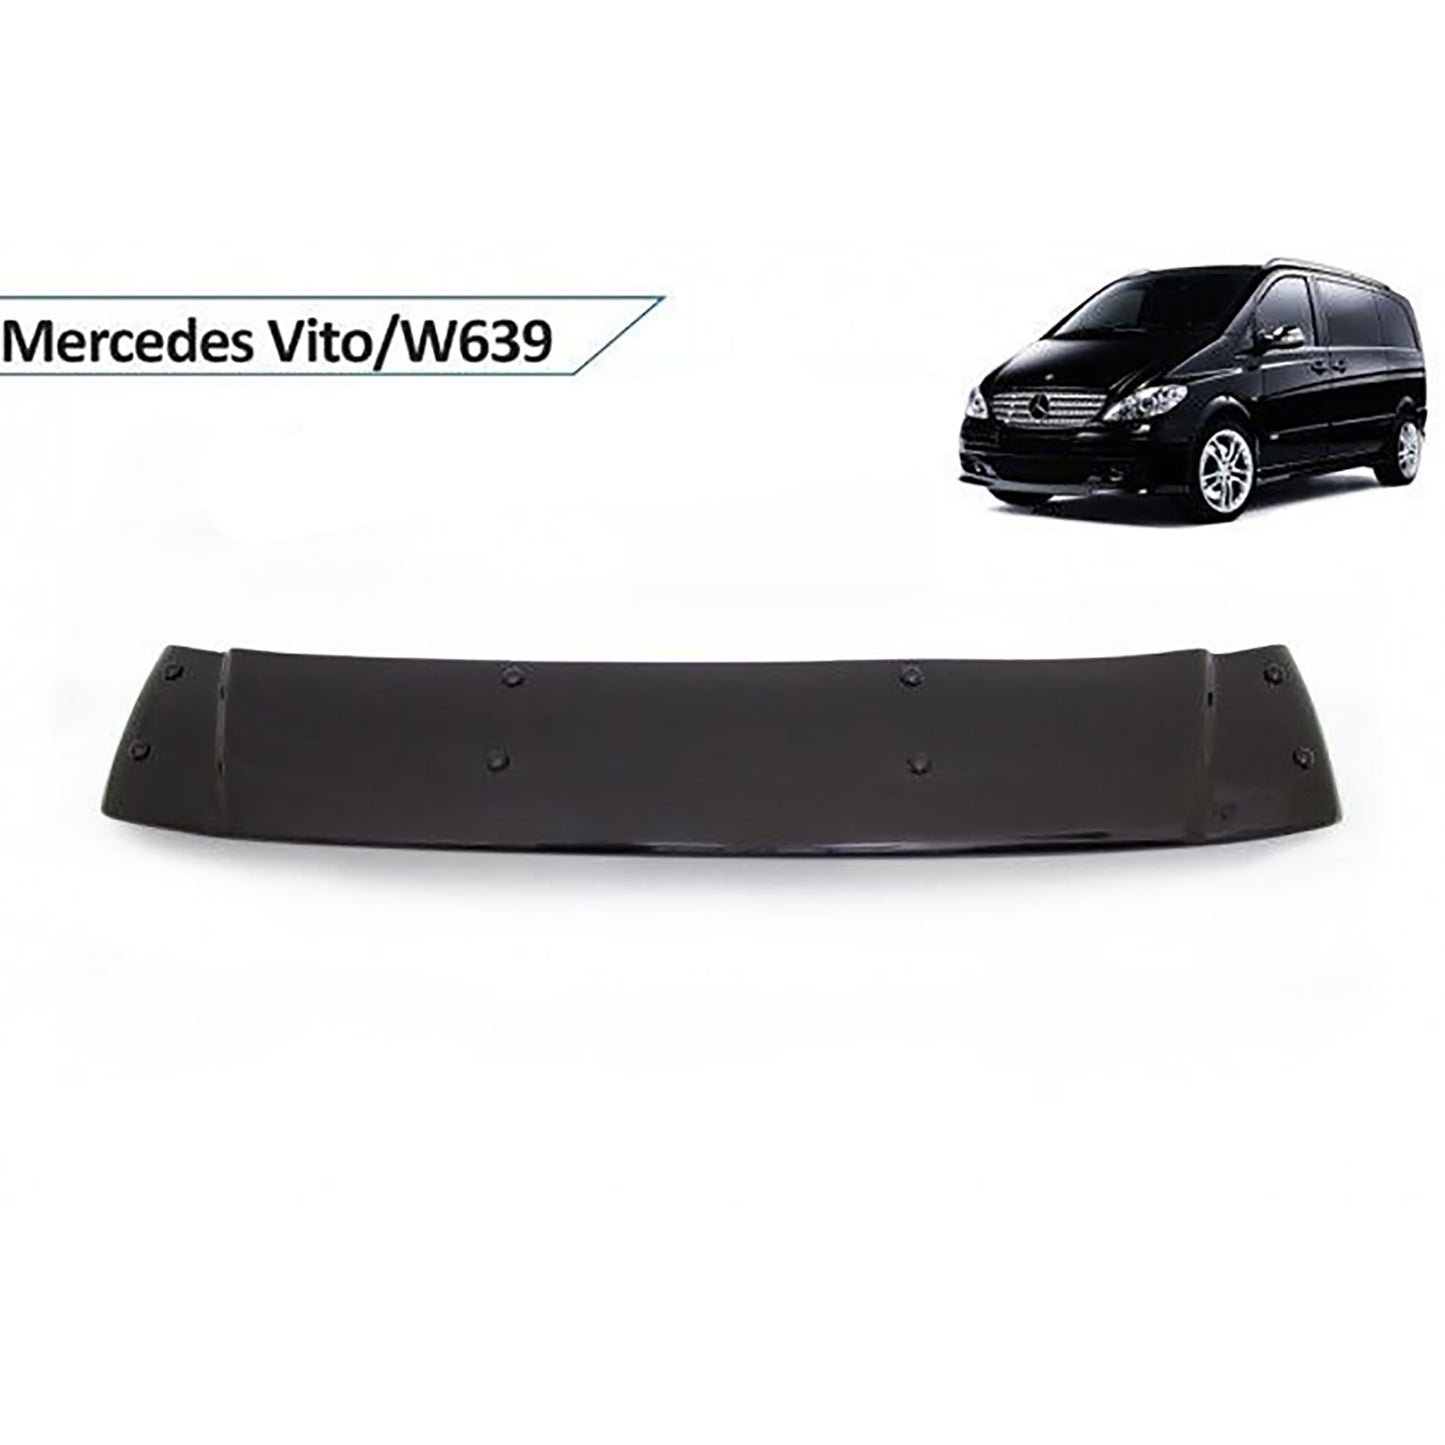 Mercedes Vito Ön Cam Güneşliği Aksesuarları Detaylı Resimleri, Kampanya bilgileri ve fiyatı - 1